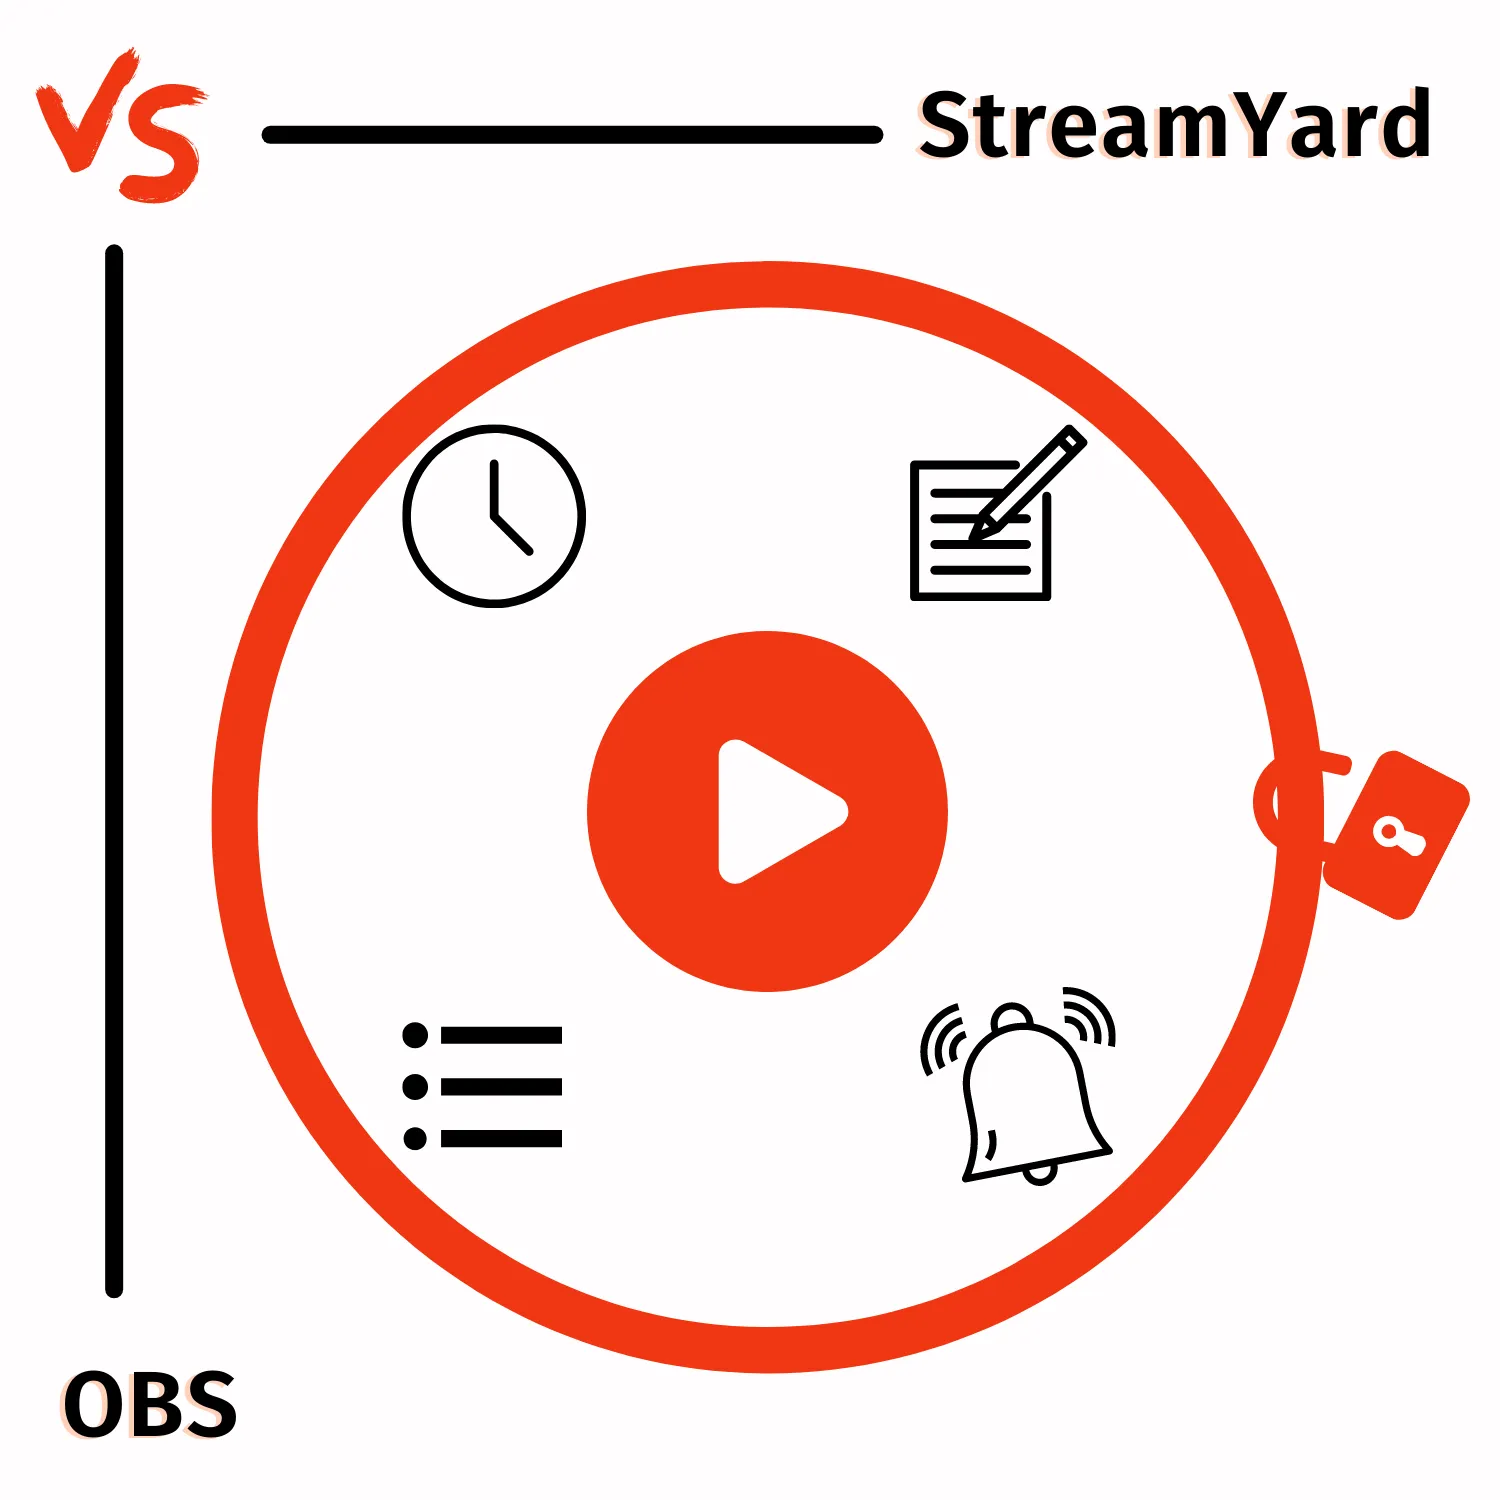 StreamYard vs. OBS